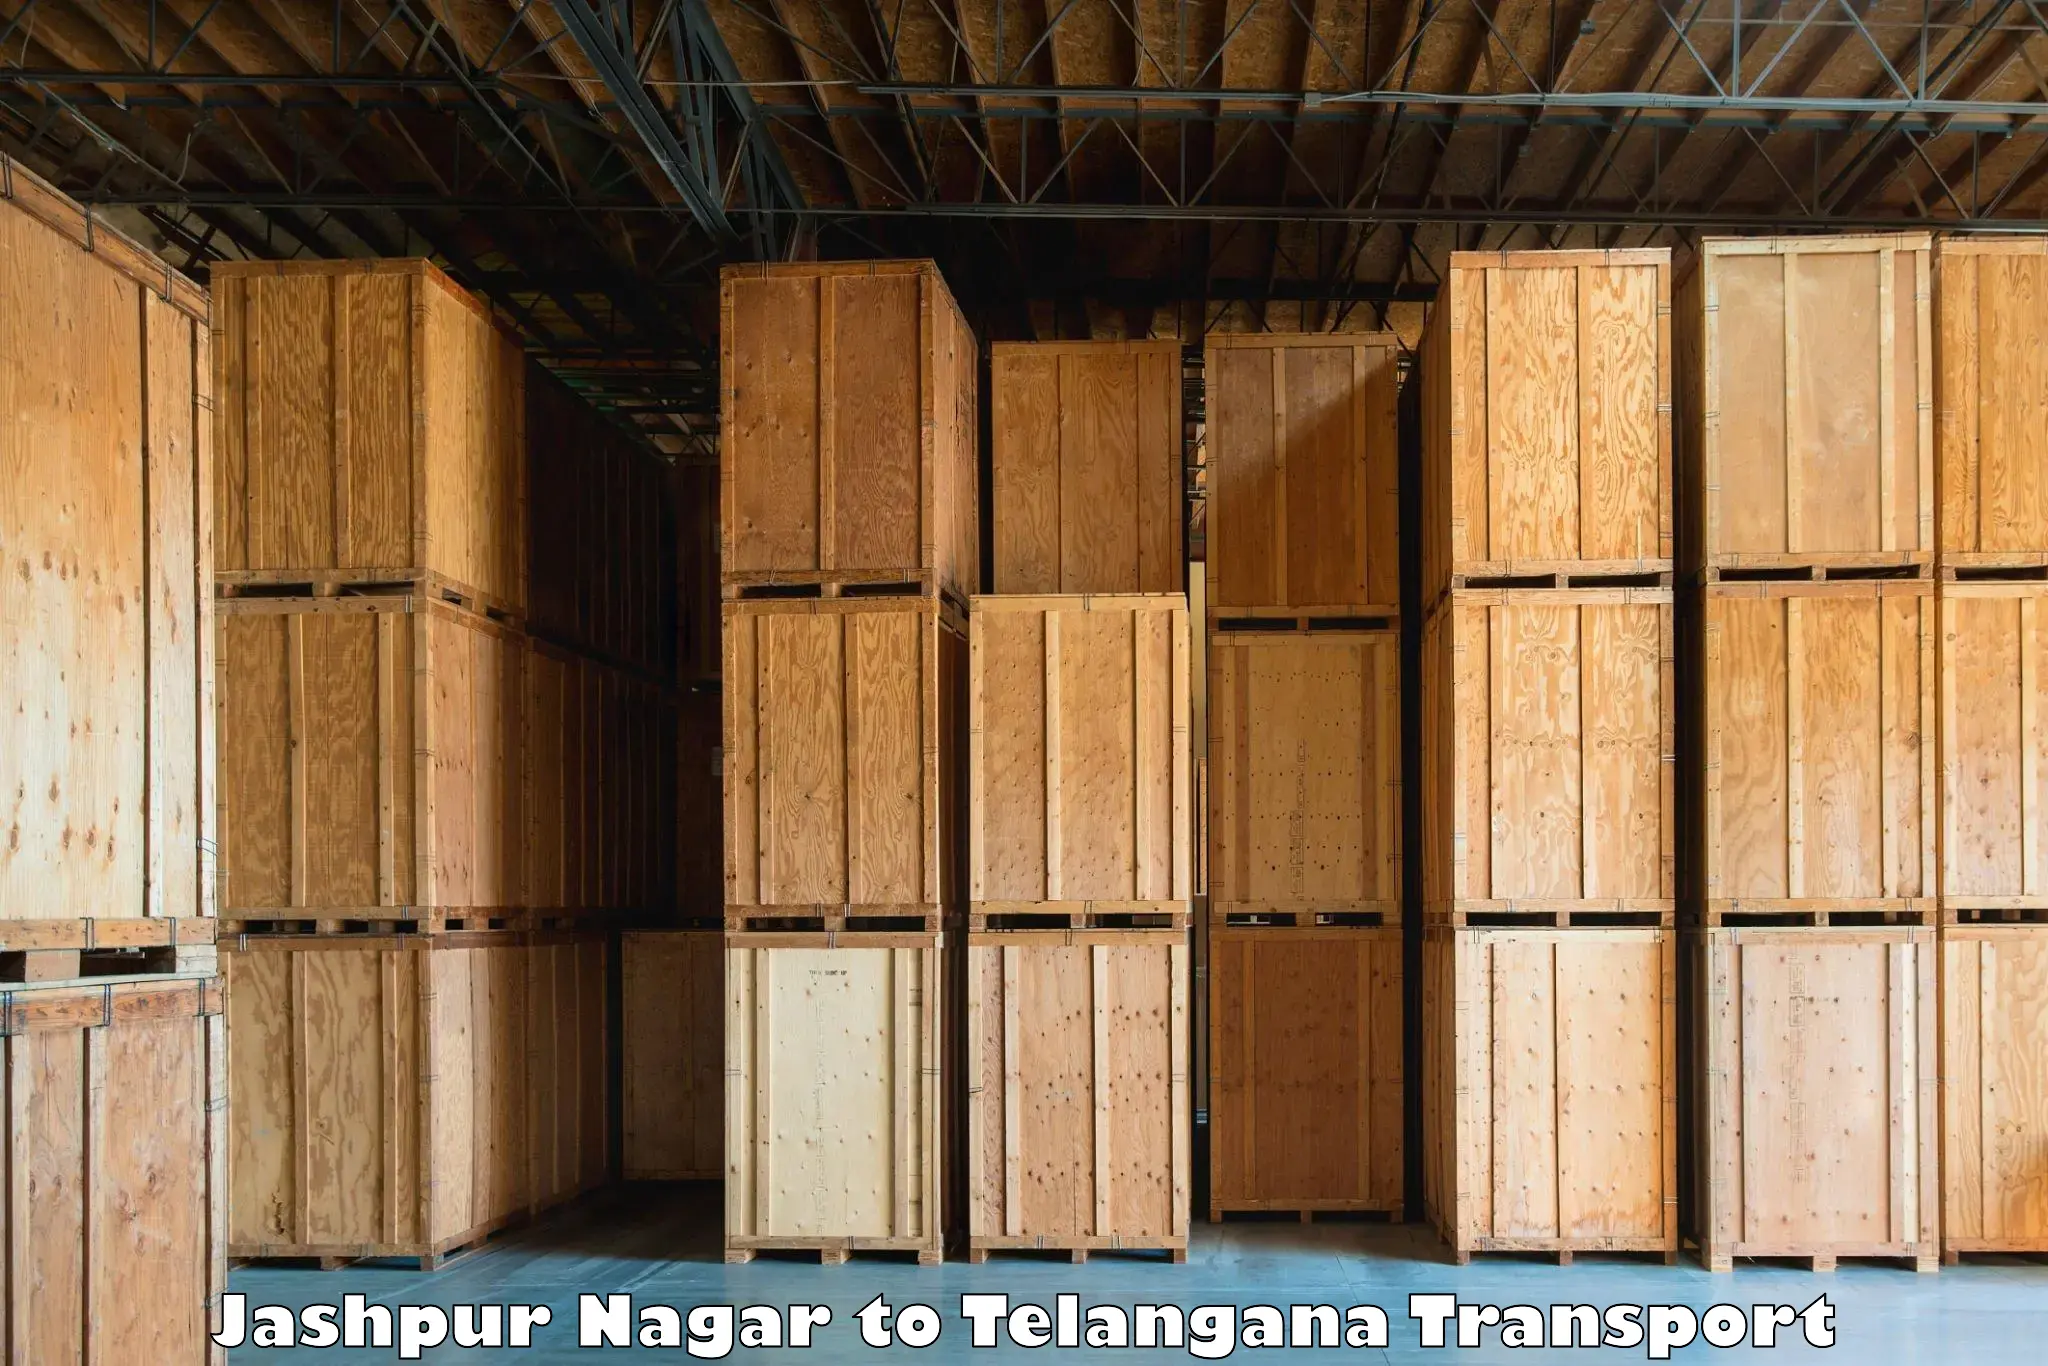 Container transport service Jashpur Nagar to Mahabub Nagar